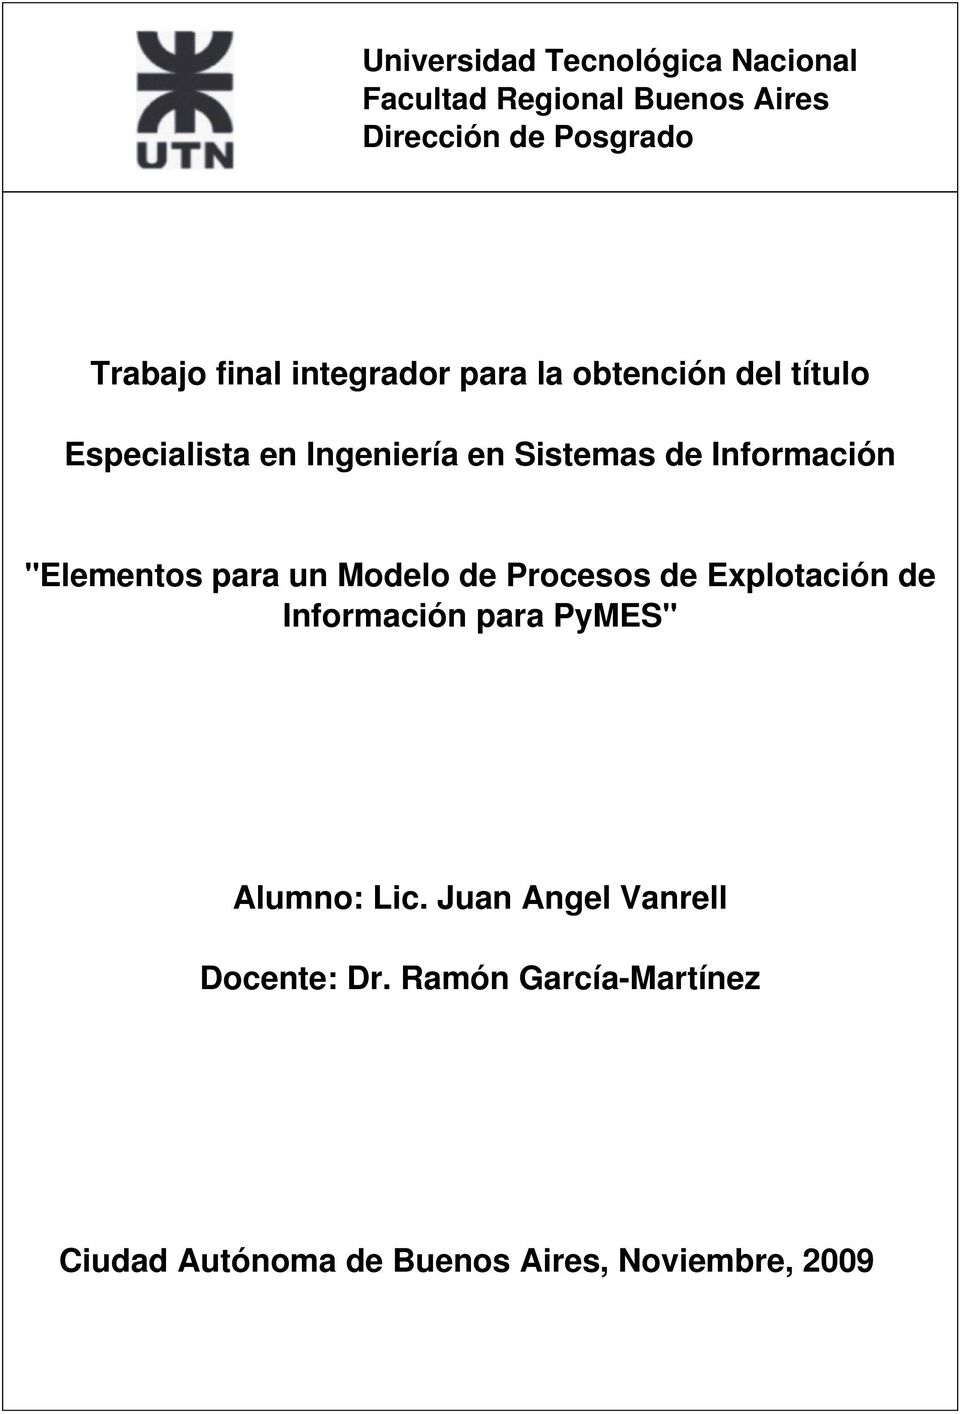 Información "Elementos para un Modelo de Procesos de Explotación de Información para PyMES"